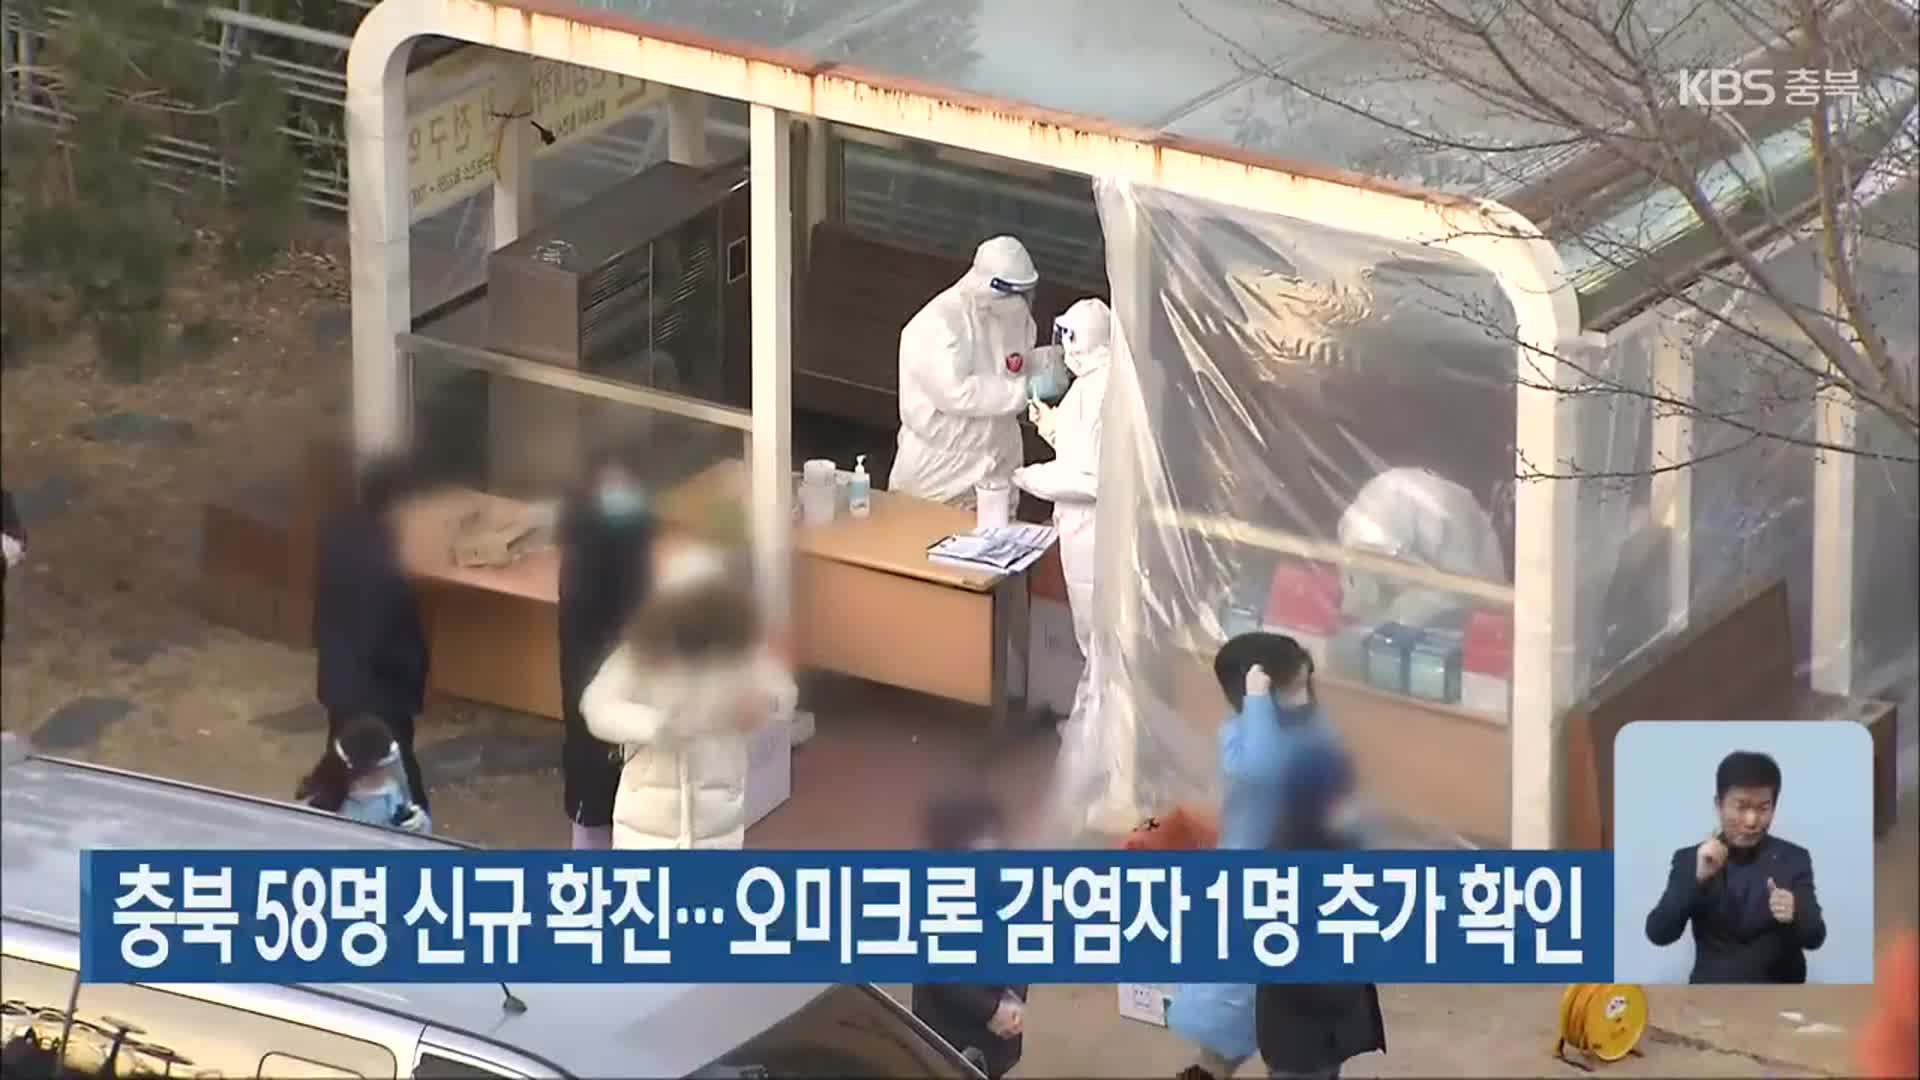 충북 58명 신규 확진…오미크론 감염자 1명 추가 확인